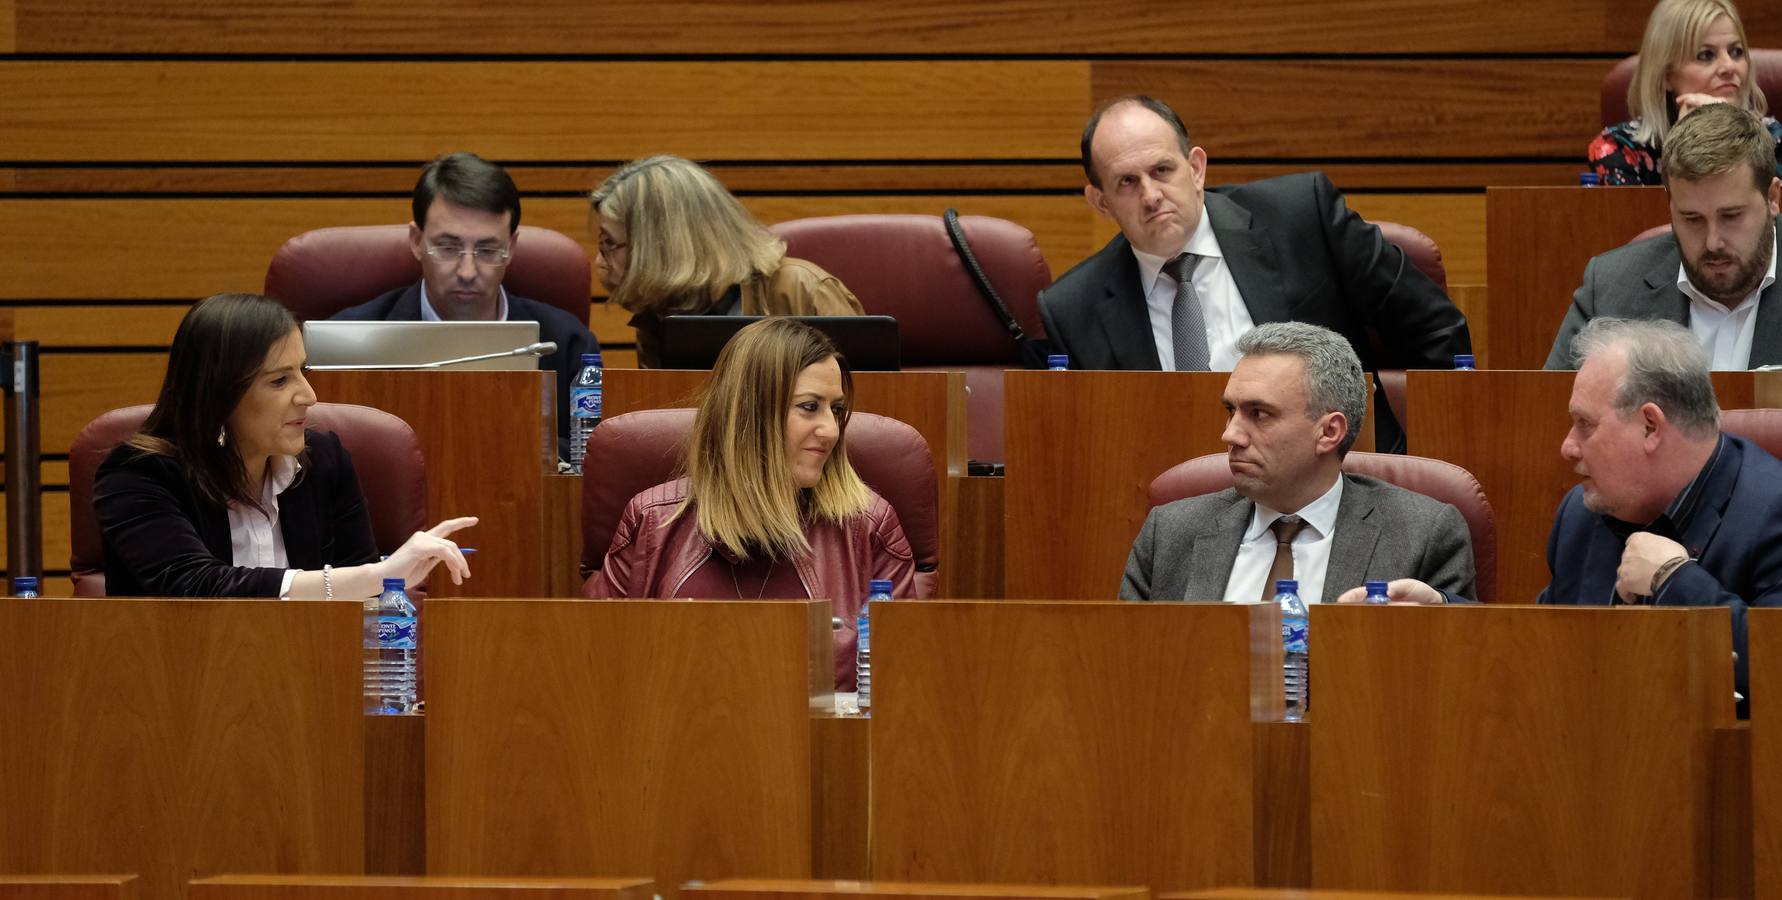 El presidente de la Junta de Castilla y León, Juan Vicente Herrera, ha tendido la mano una vez más para cerrar acuerdos de comunidad en torno a la ordenación del territorio y la reforma del Estatuto de Autonomía